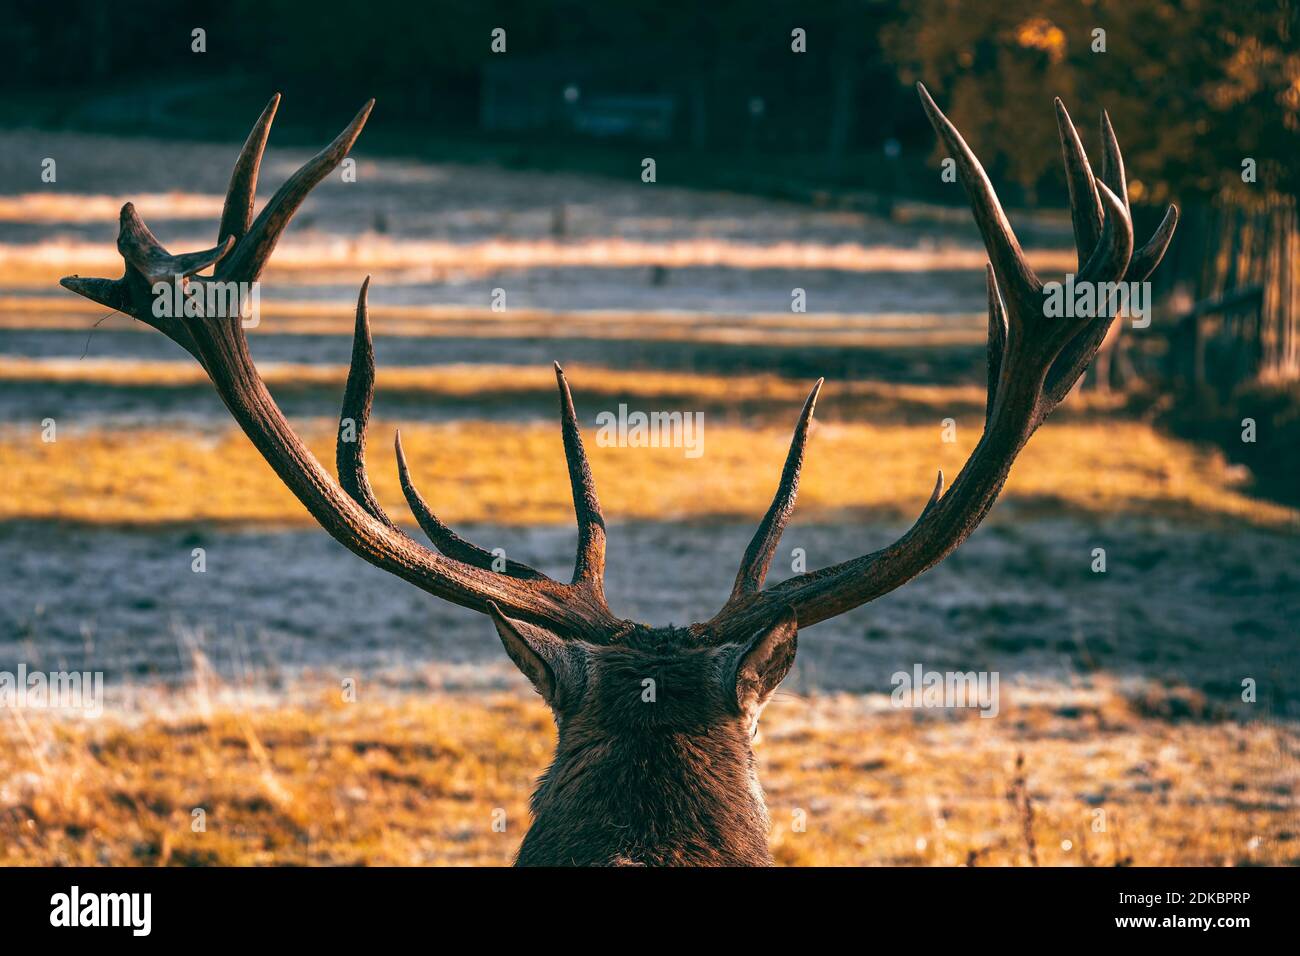 Deer, antlers, red deer, Cervidae, Cervus elaphus, red deer, forest, Baden-Wuerttemberg, Germany, Europe Stock Photo